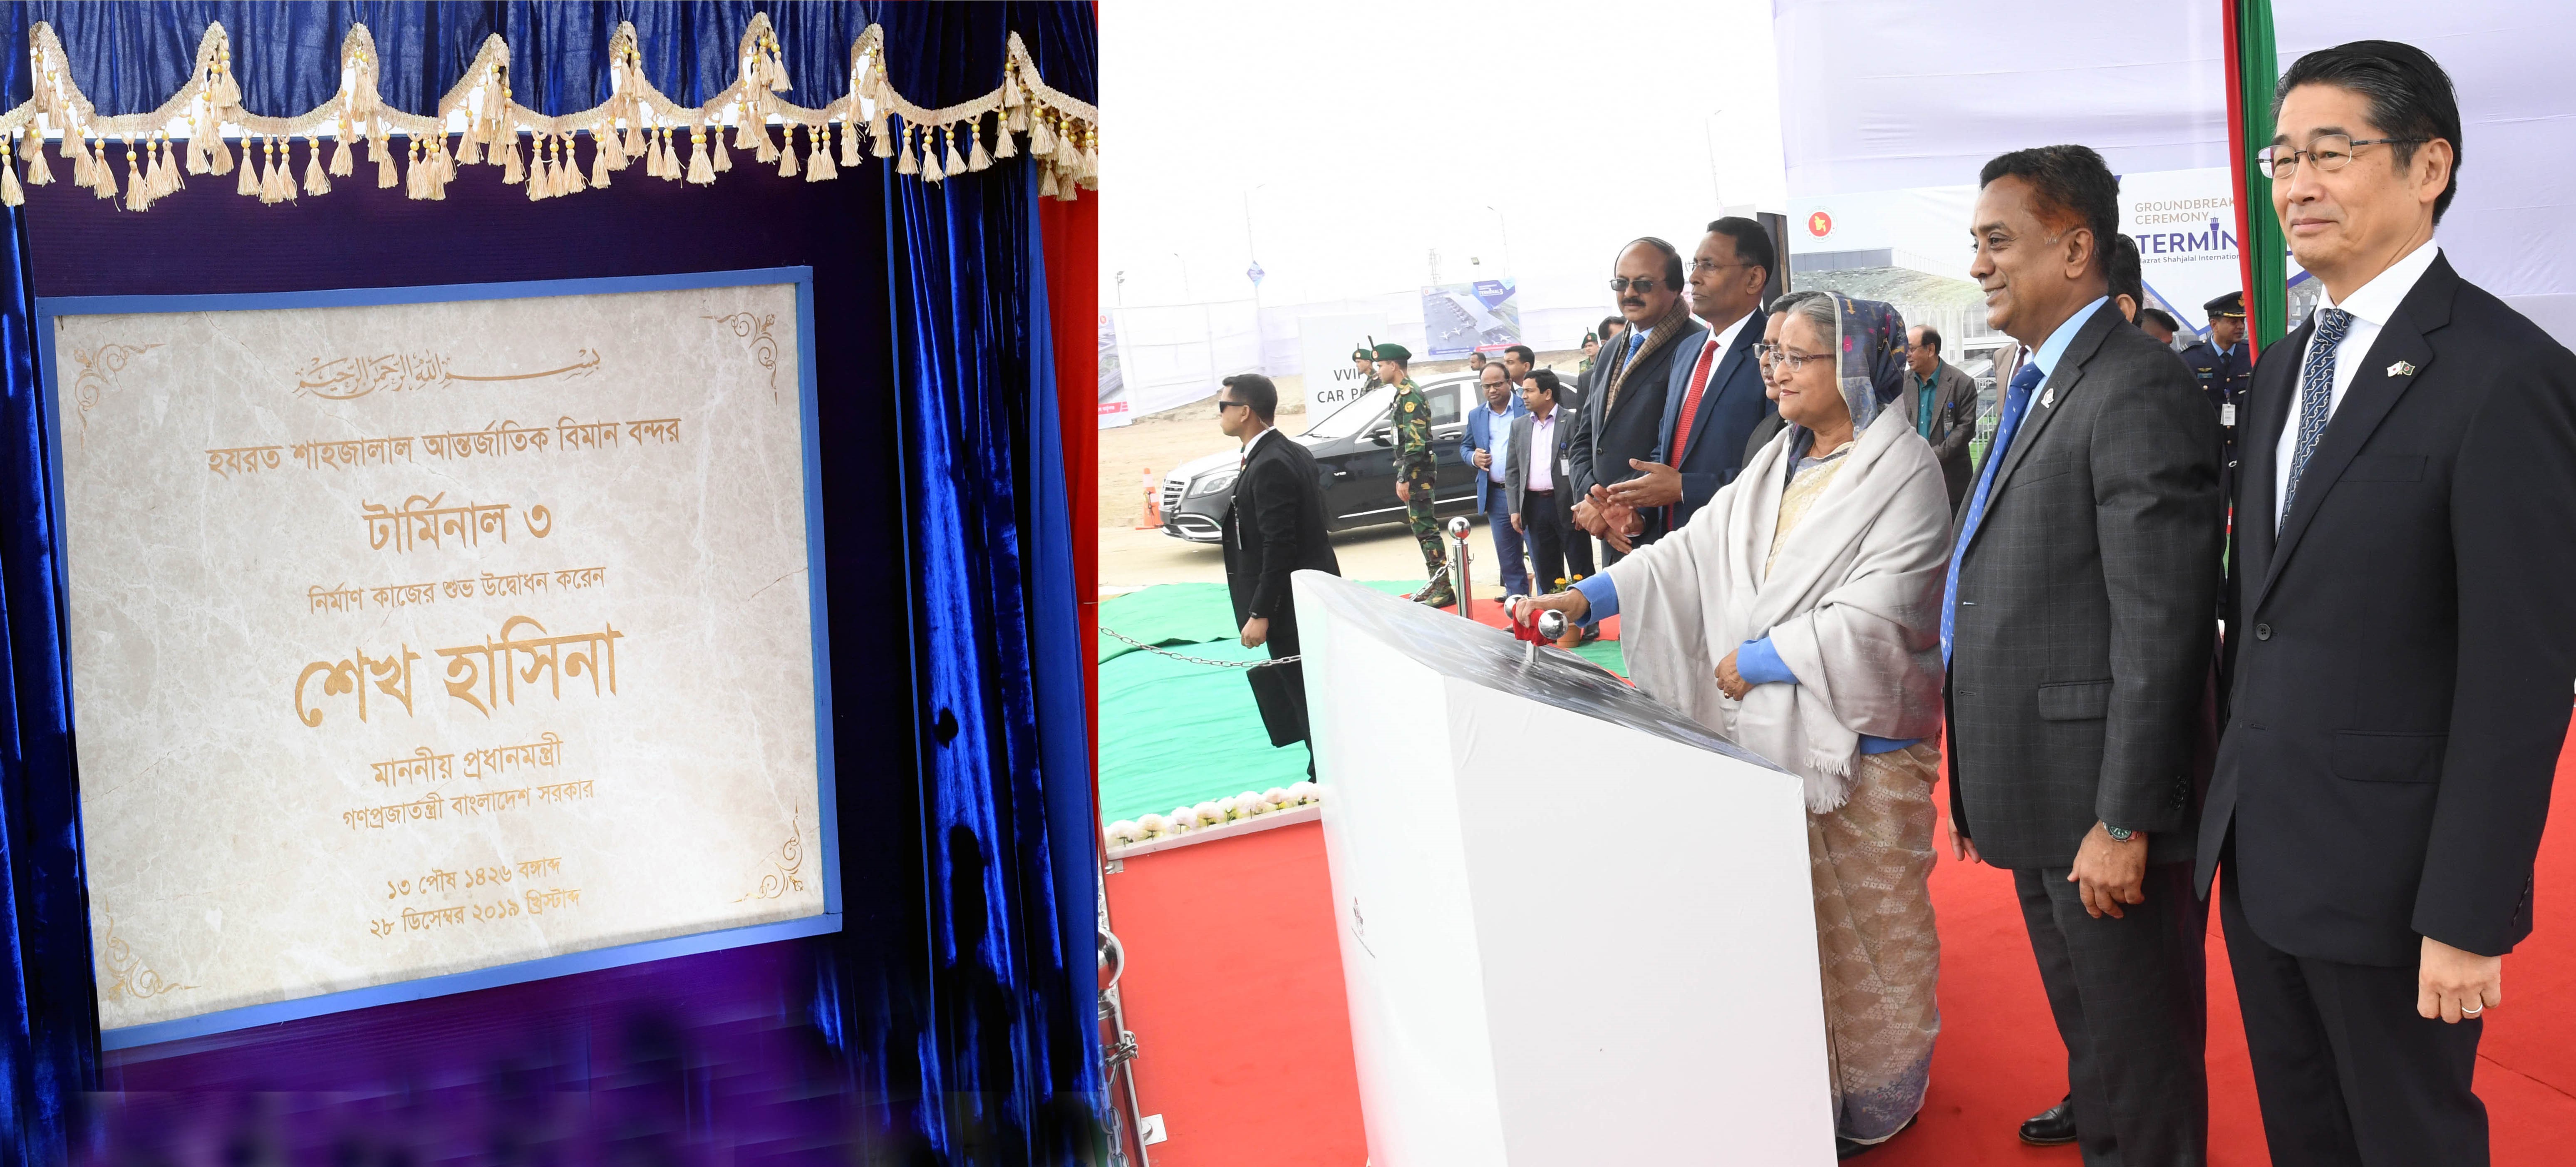 Sheikh Hasina unveils third terminal work